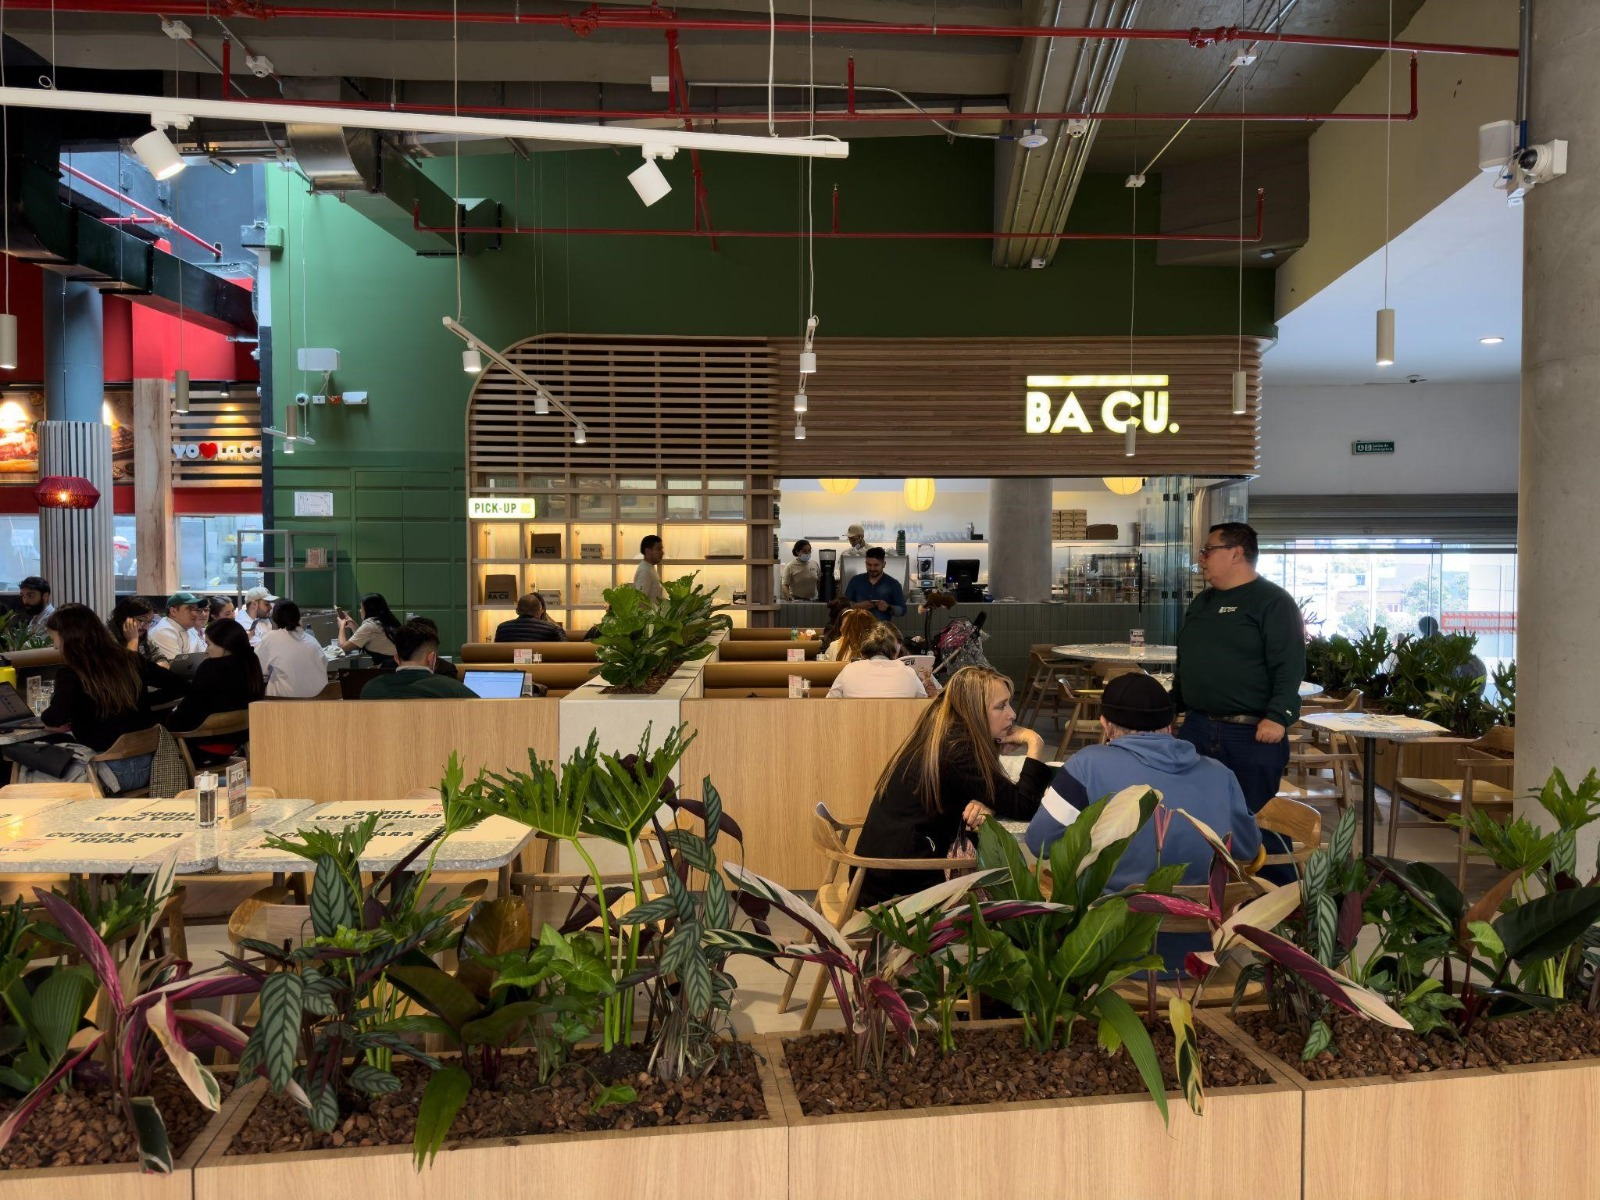 Bacu abre sus puertas en centros comerciales: Parque la Colina y Titán Plaza